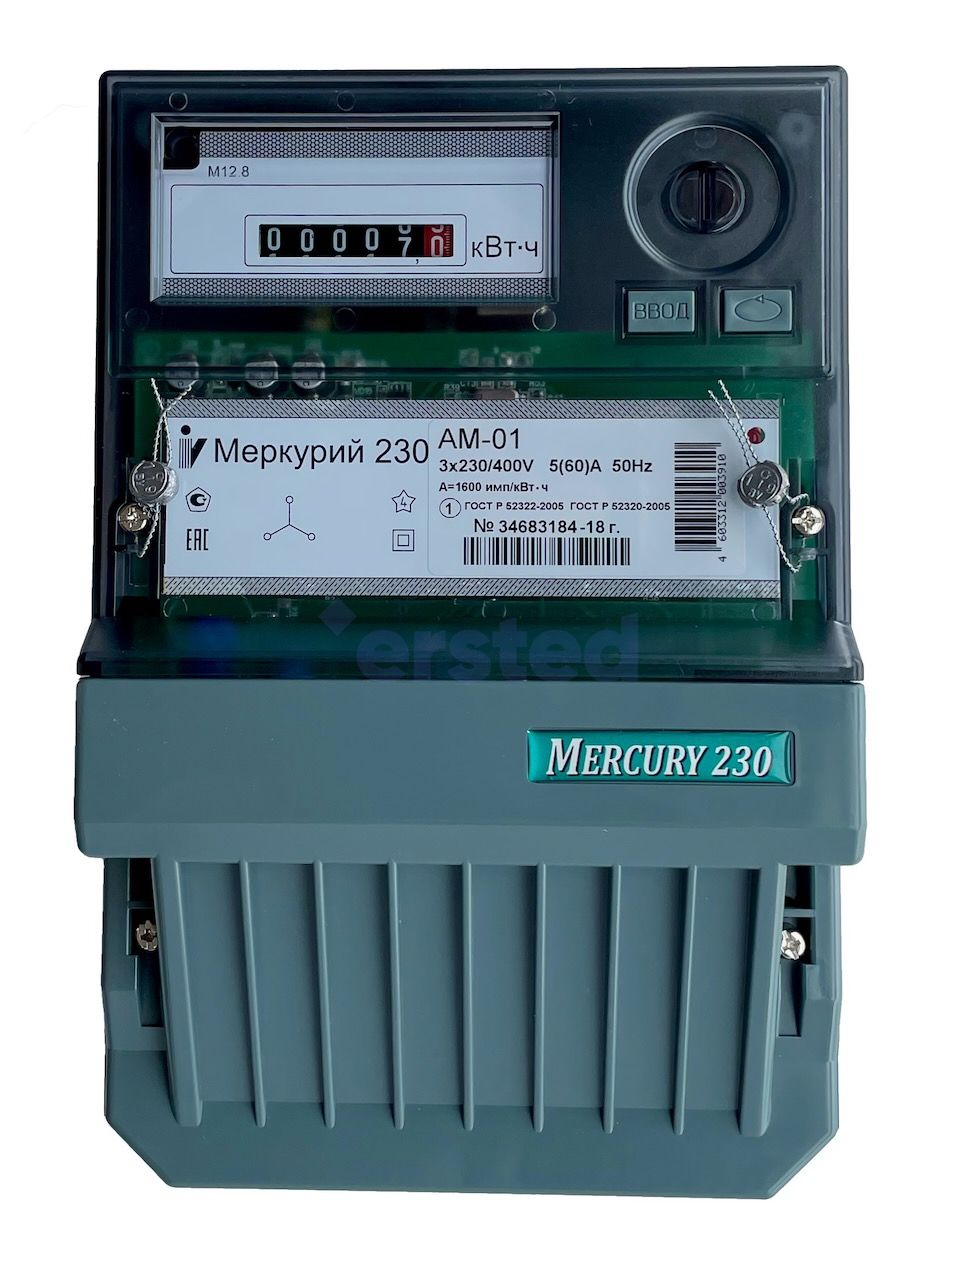 Меркурий 230 АМ-01 5-60А, 380В Электросчетчик трехфазный, однотарифный, фото 